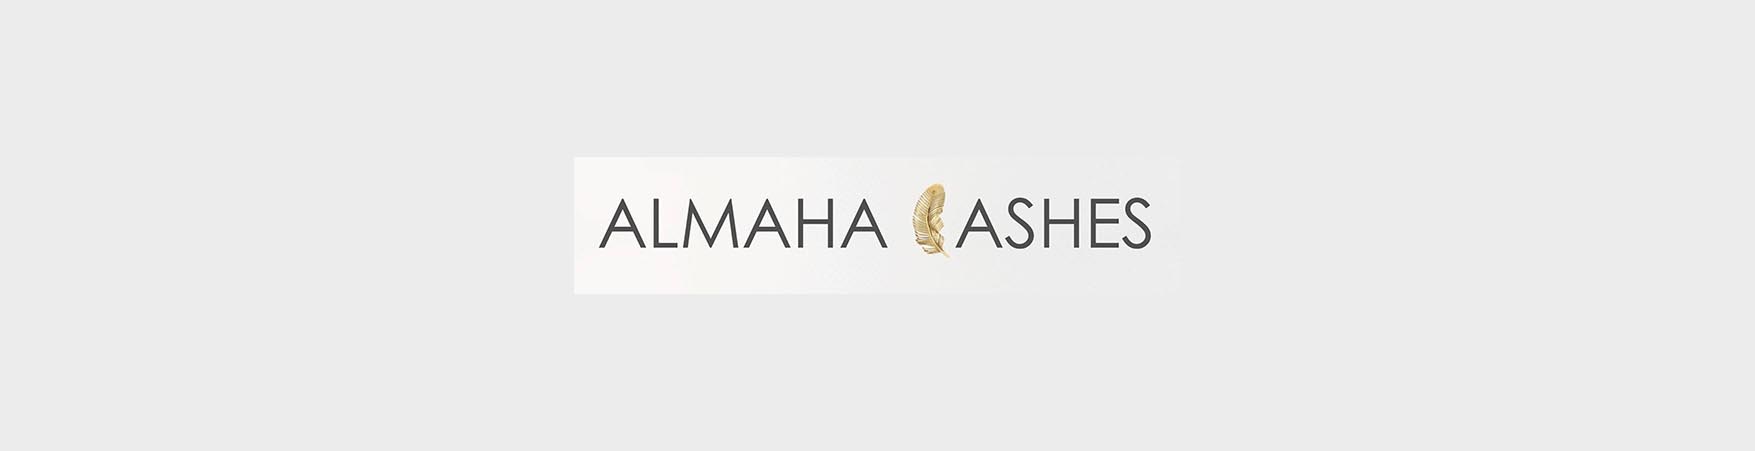 Al Maha Lashes